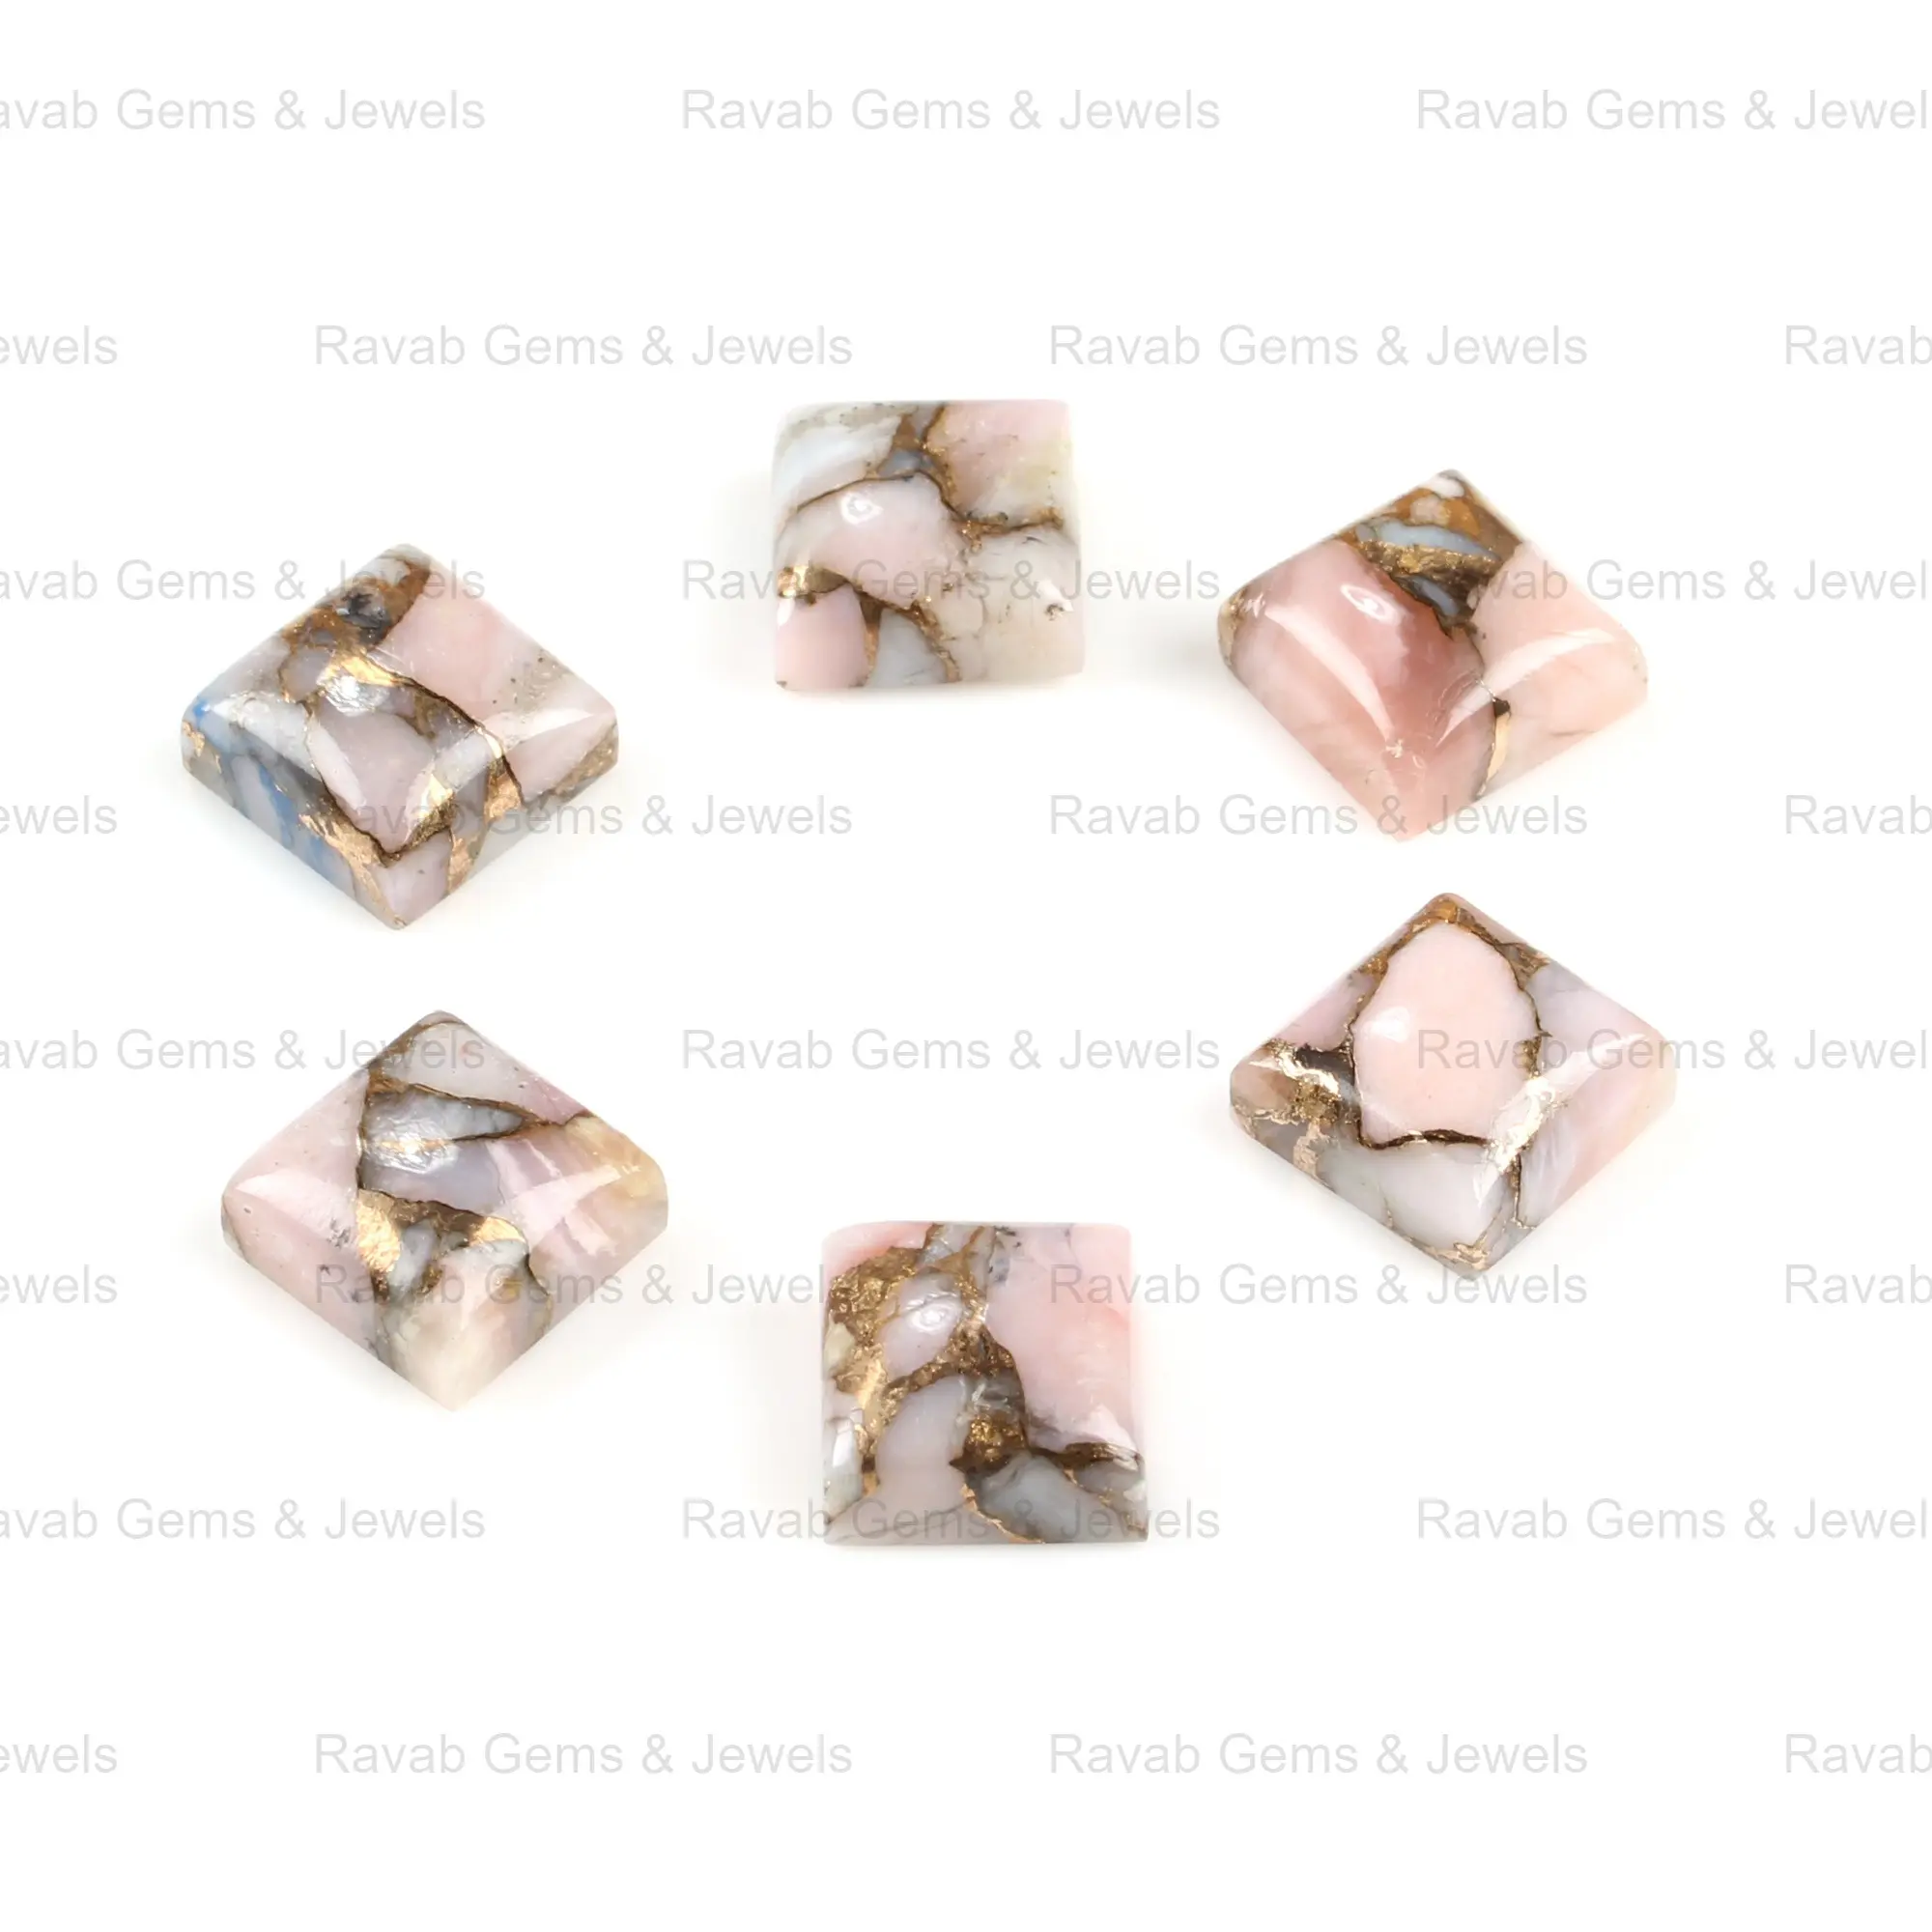 Hochglanz polierter 14mm quadratischer Cabochon Natural Smooth Pink Opal Copper Composite Edelsteins chmuck, der lose Kabinen steine herstellt